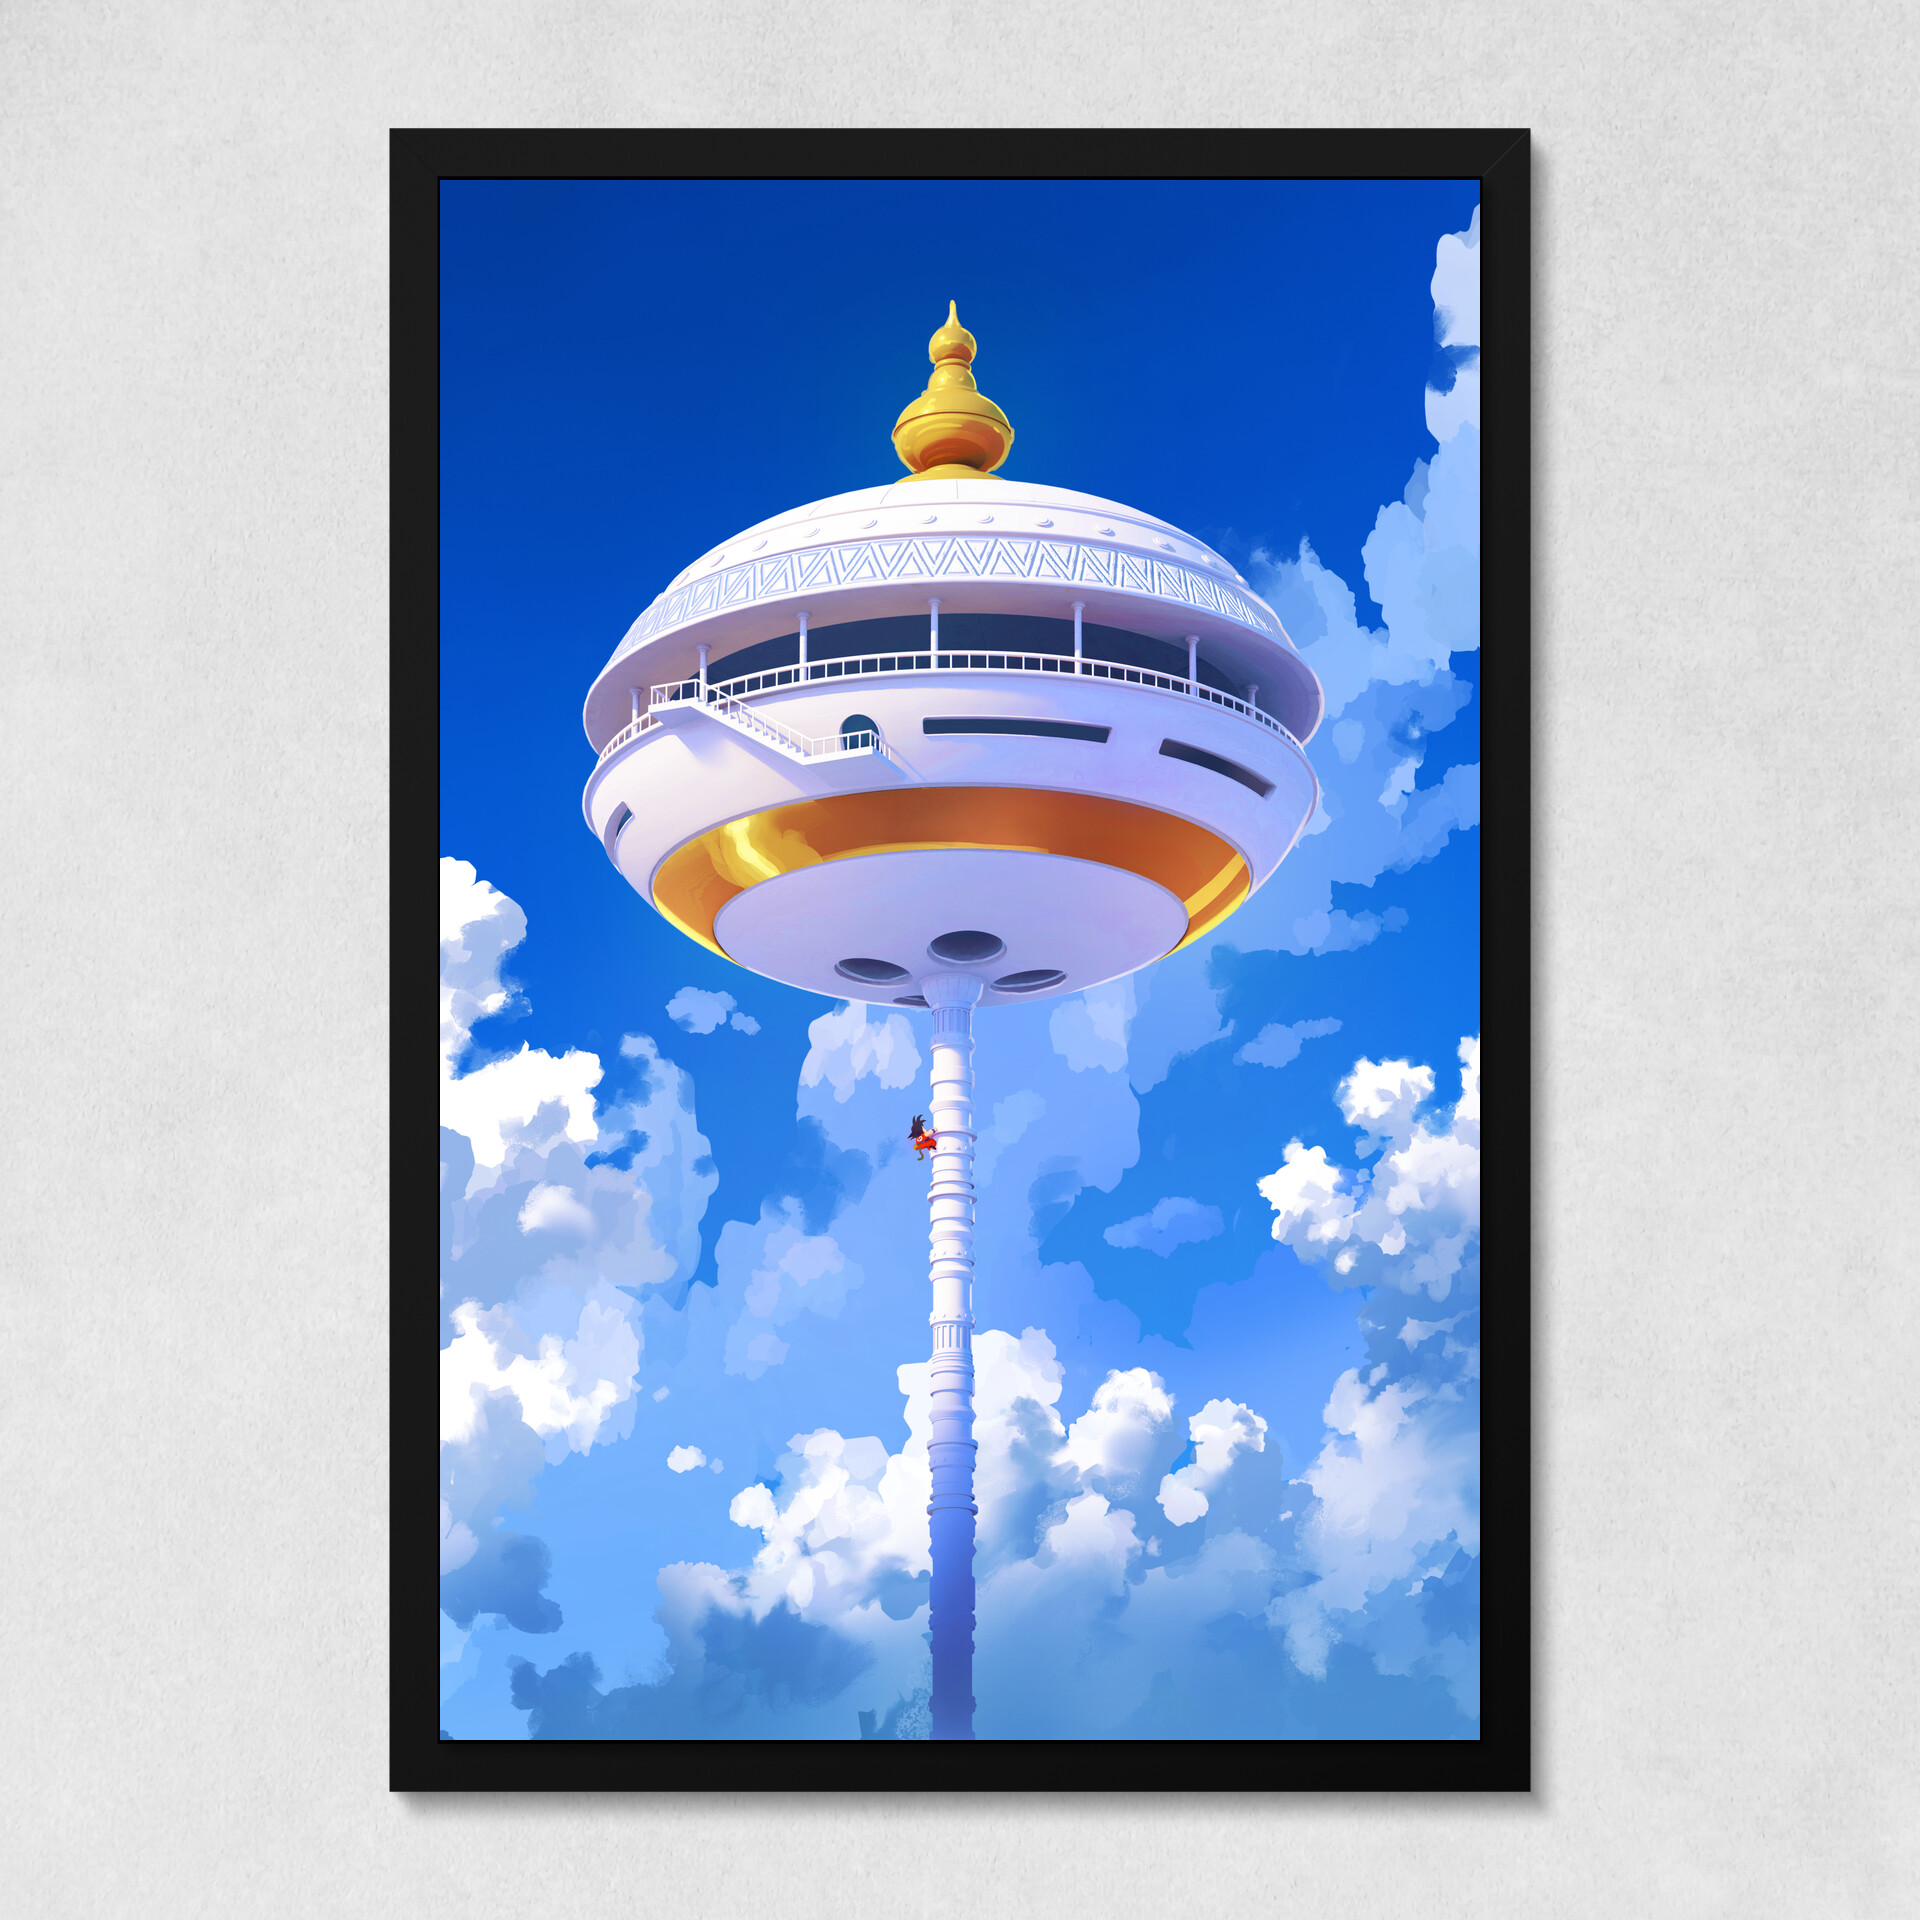 Картина на холсте: Башня Карин - интернет магазин картин 47art.ru